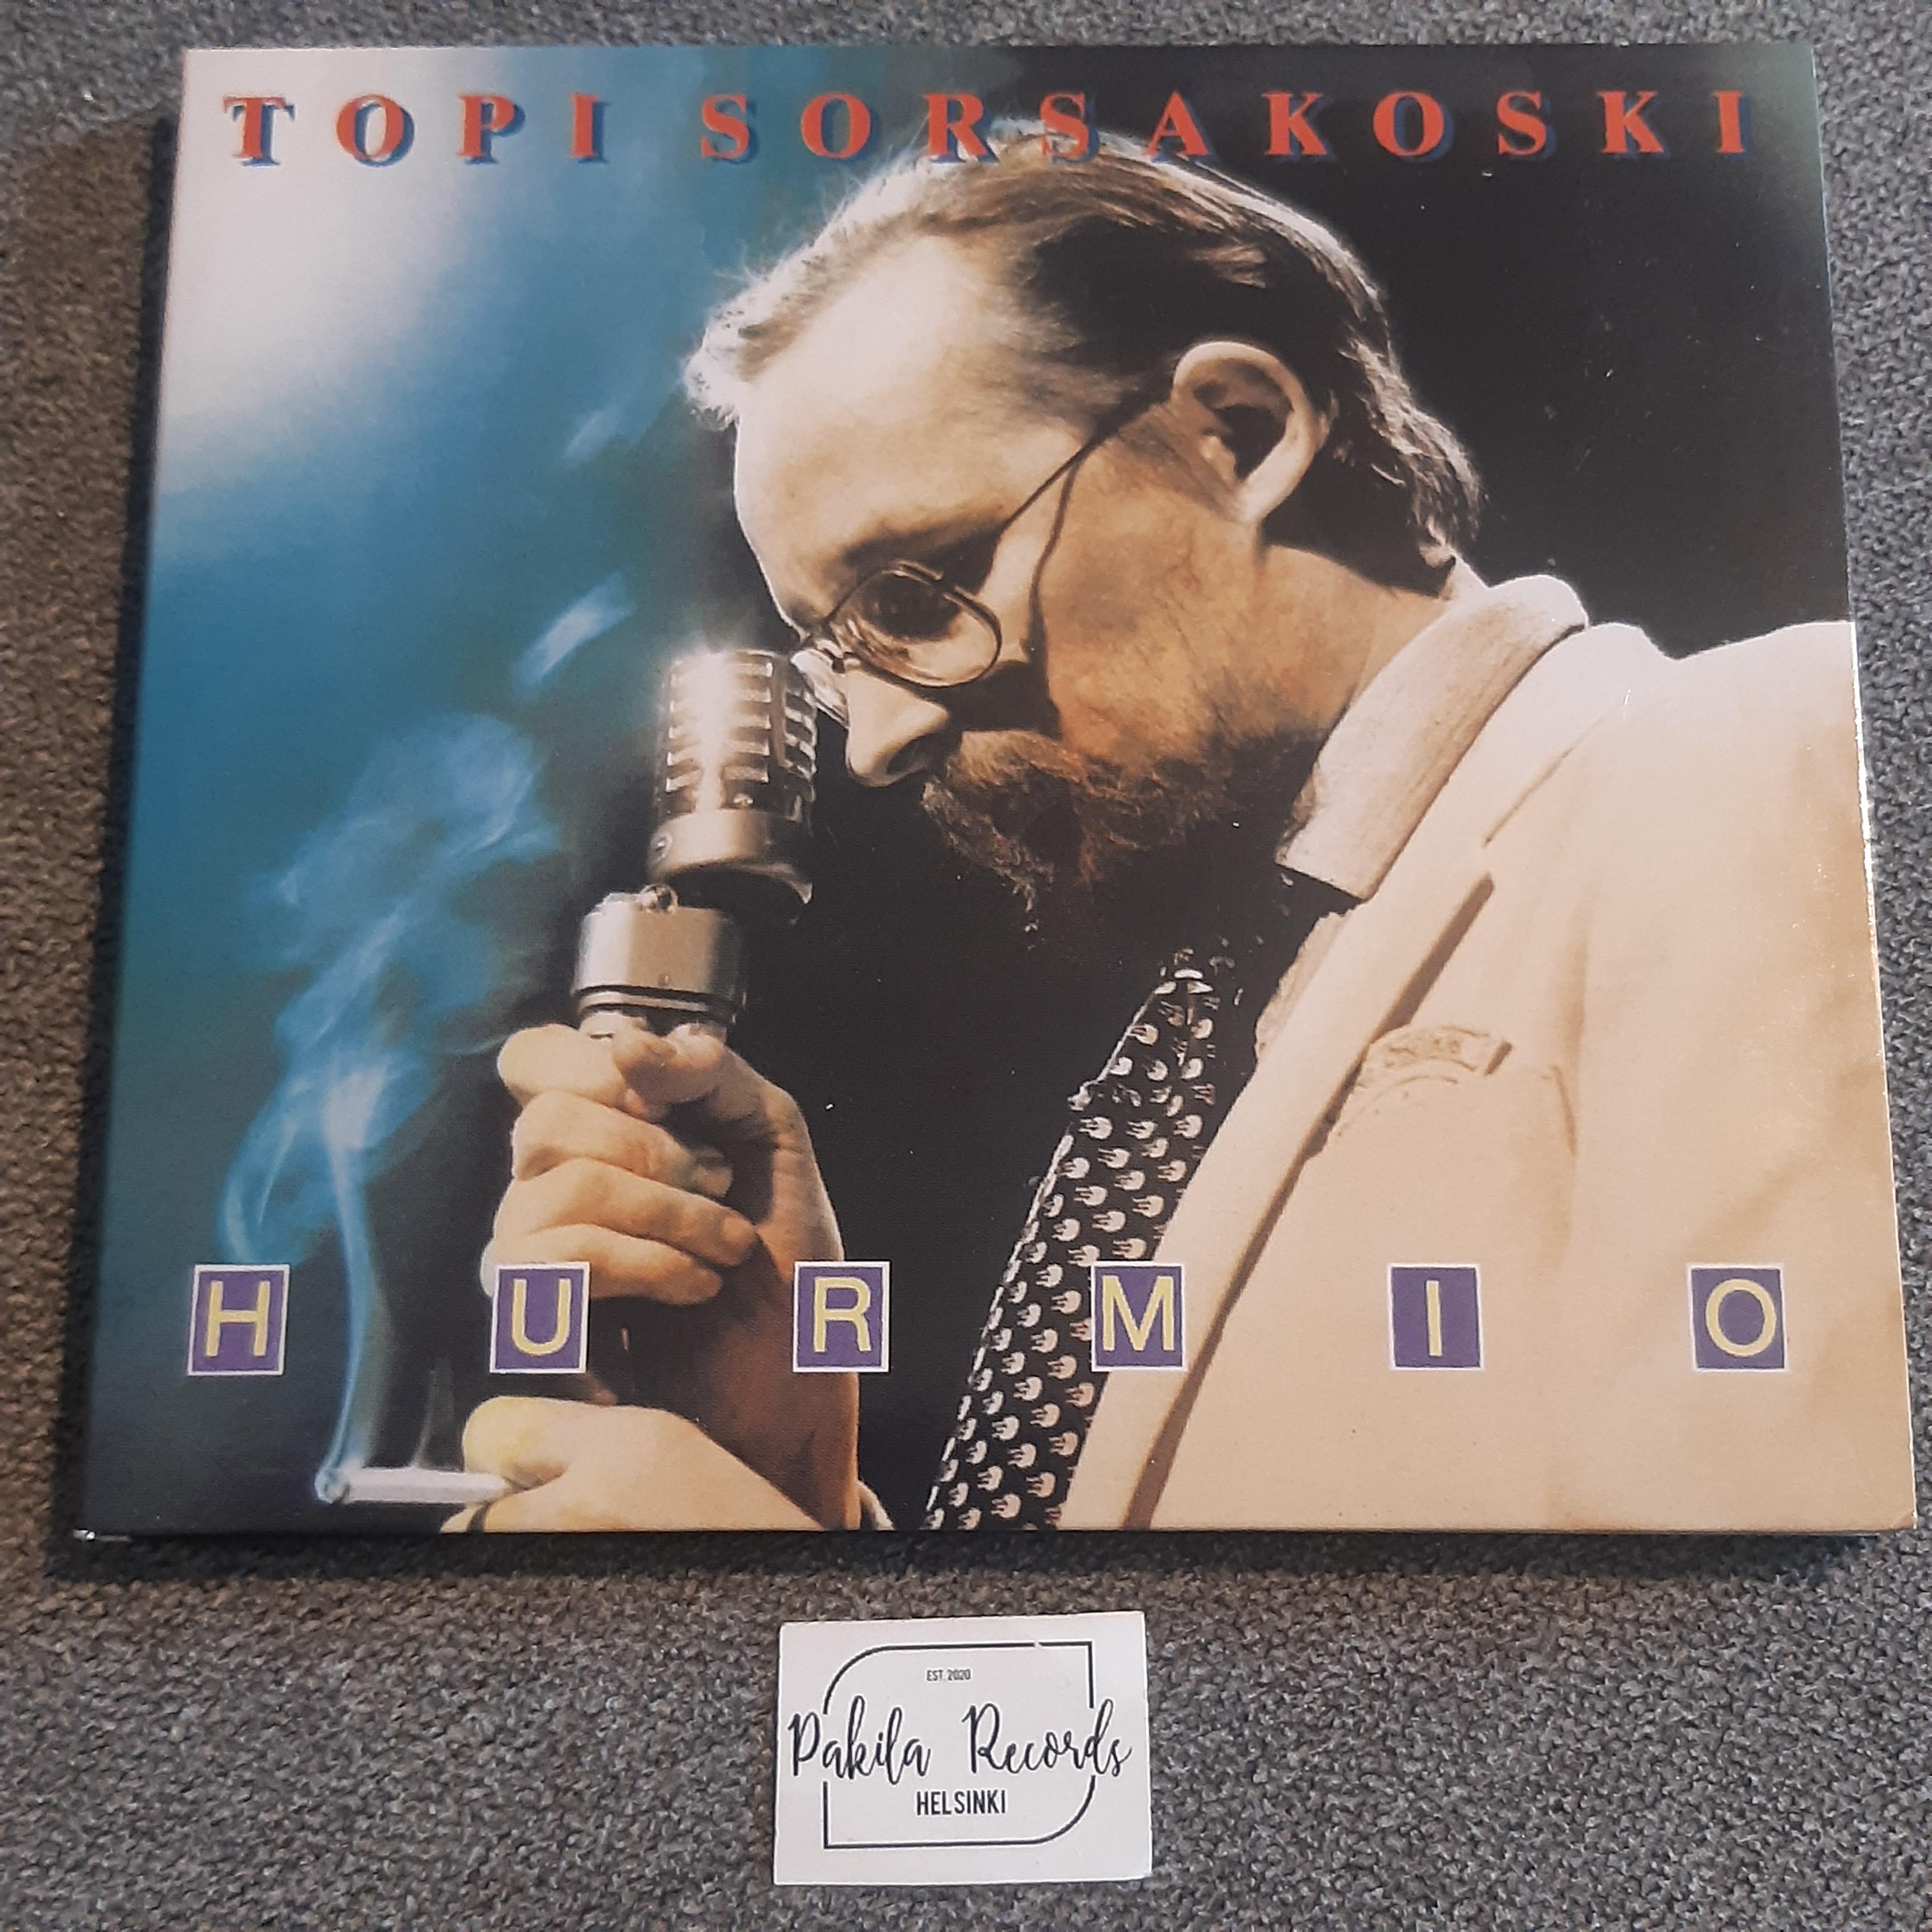 Topi Sorsakoski - Hurmio - CD (käytetty)